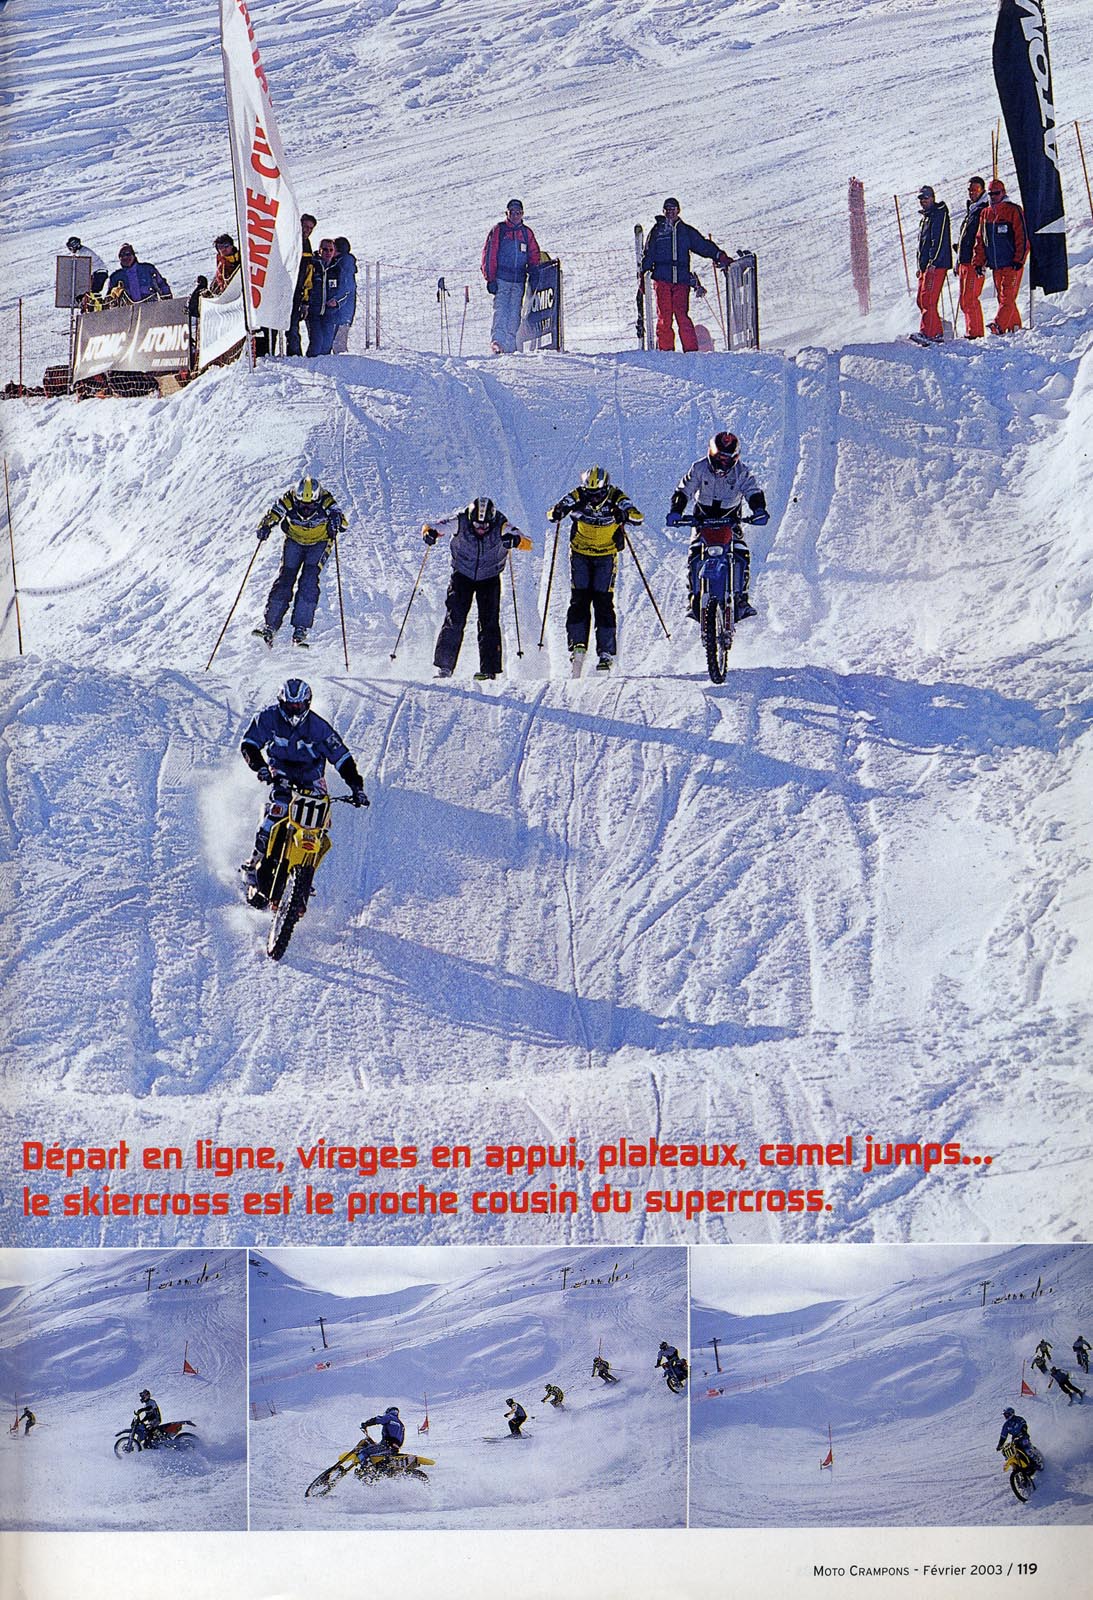 Une petite confrontation MX contre Skicross à la montagne, voilà le challenge lancé par Luc Alphand à Jena-Michel Bayle